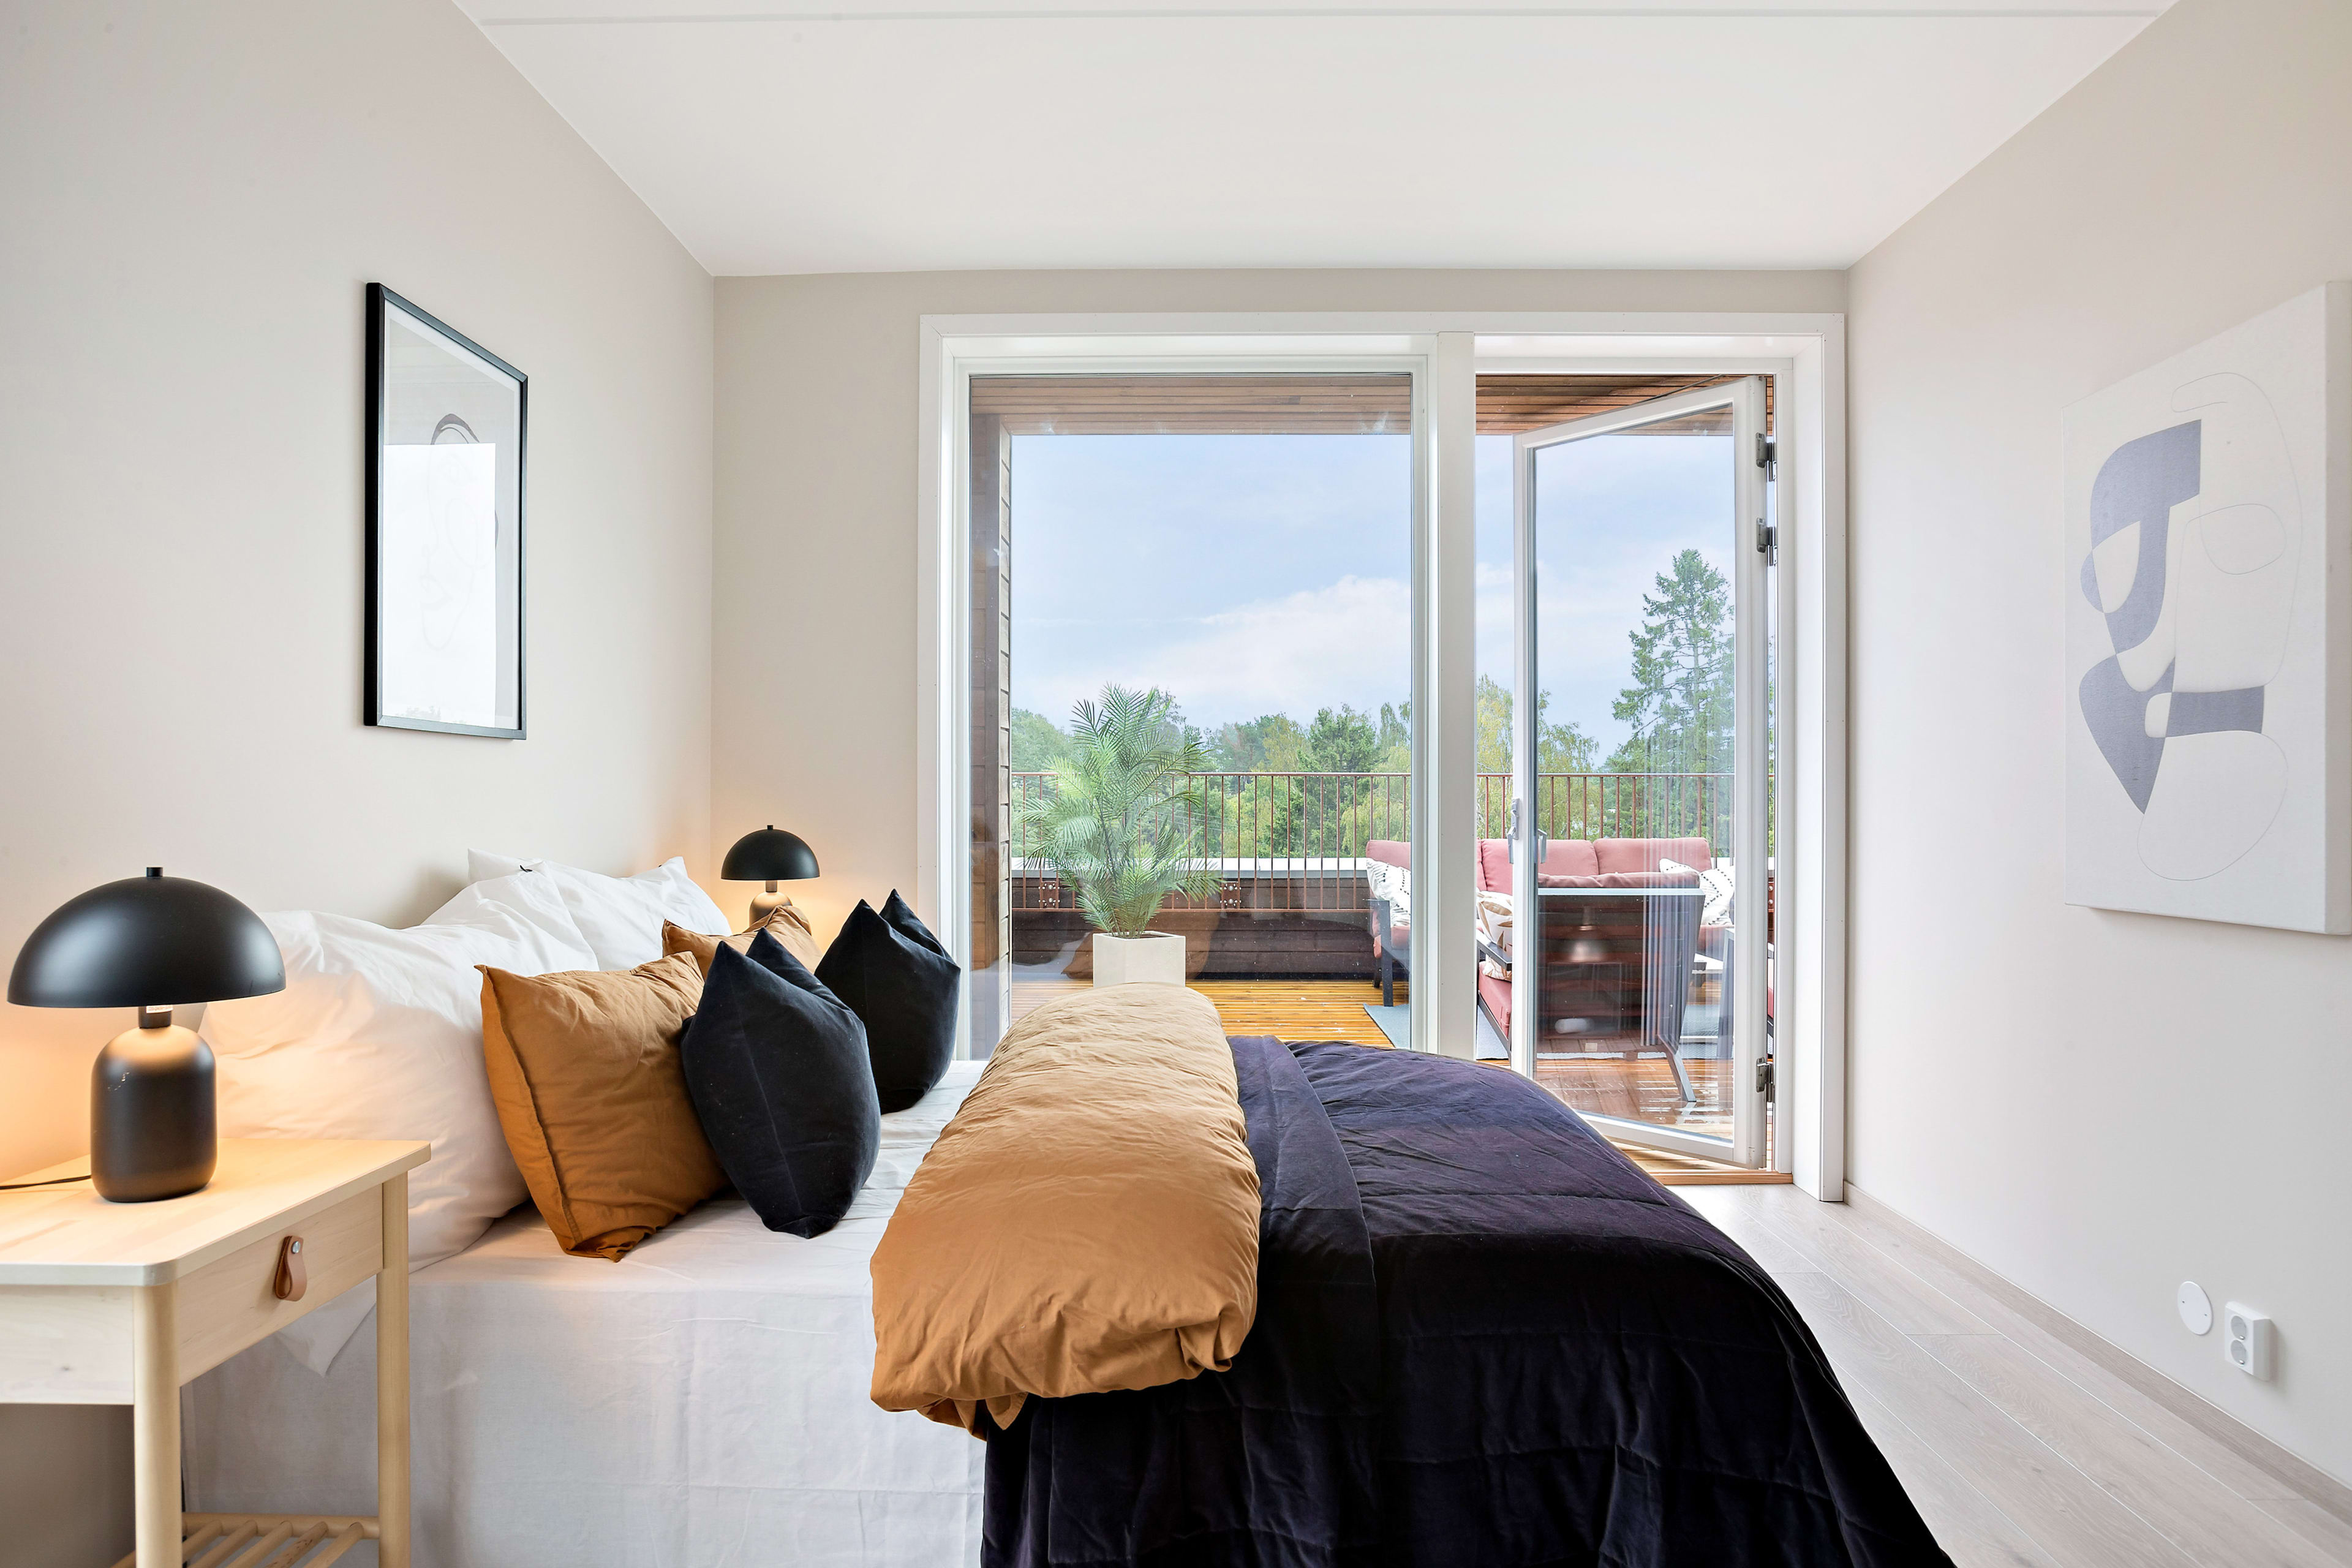 Foto av et soverom med direkte utgang til balkong i Haraldåsen.